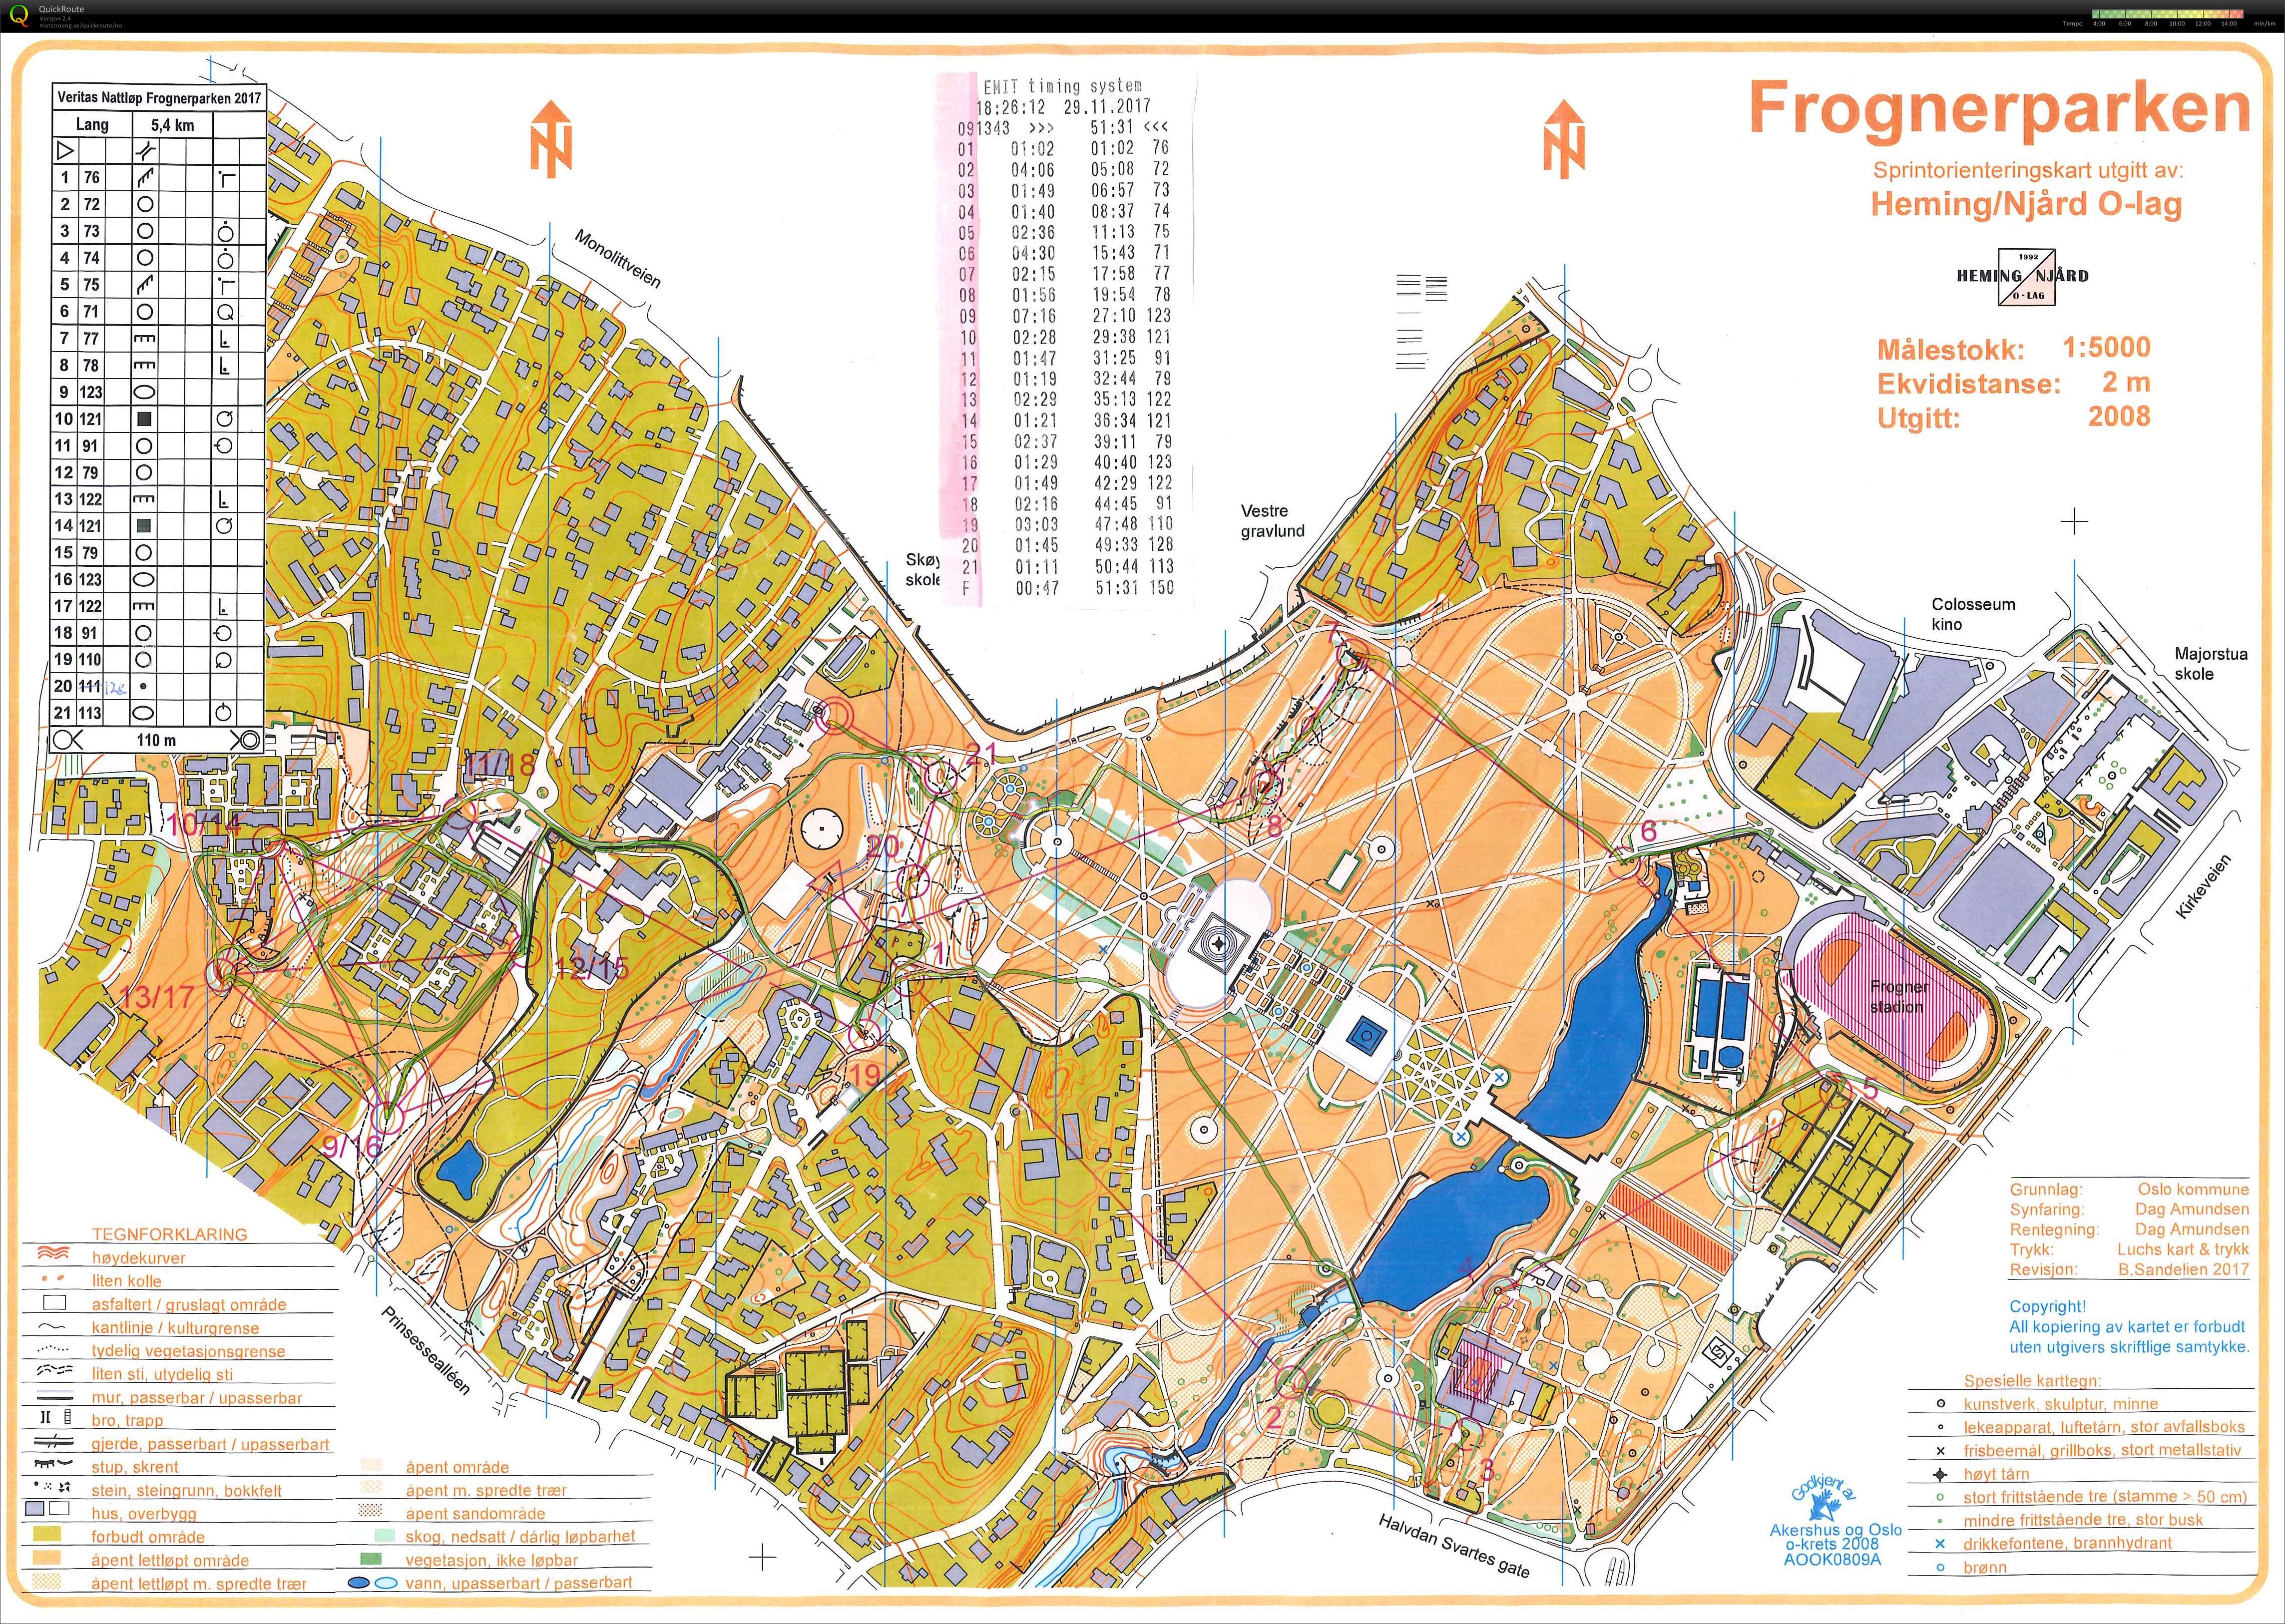 VBIL Frognerparken 171129 Lang 5,4km (28/11/2017)